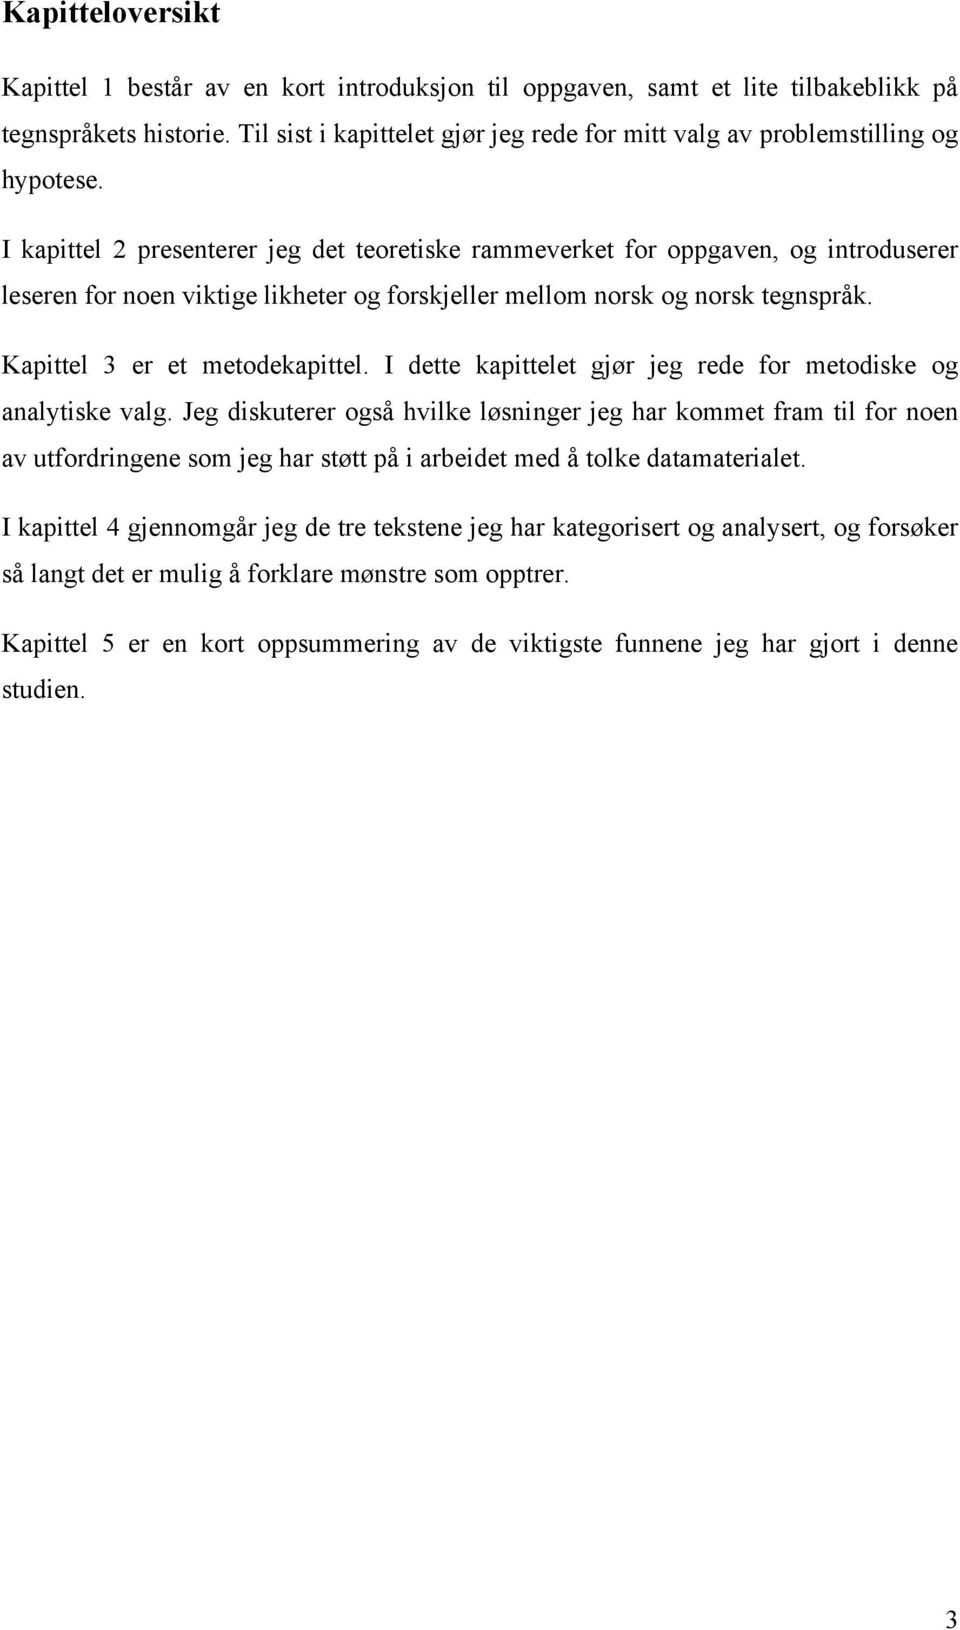 I kapittel 2 presenterer jeg det teoretiske rammeverket for oppgaven, og introduserer leseren for noen viktige likheter og forskjeller mellom norsk og norsk tegnspråk. Kapittel 3 er et metodekapittel.